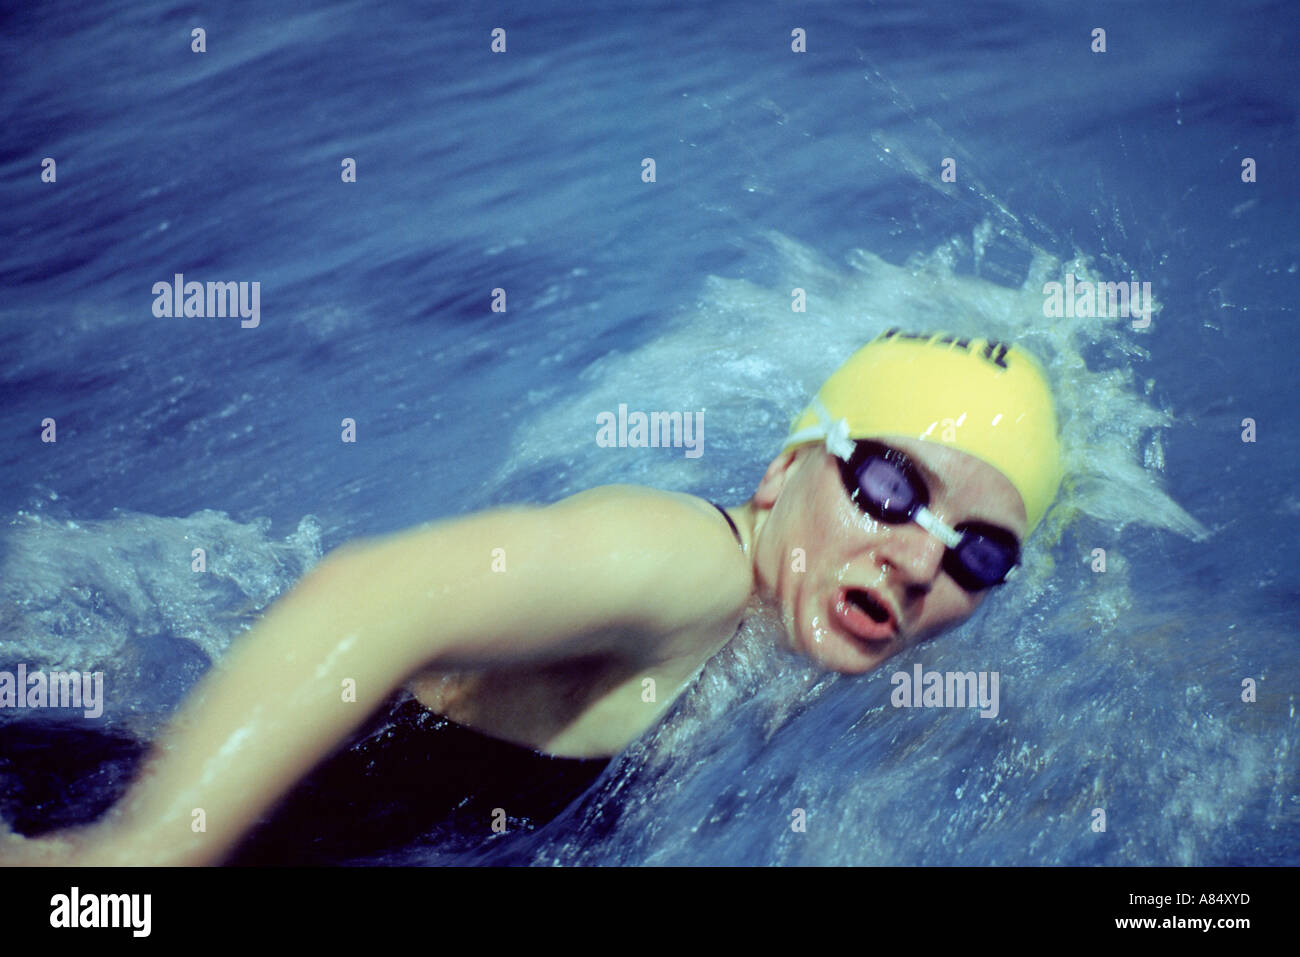 Sport Recreation Swimming Women Crawl swimming Stock Photo